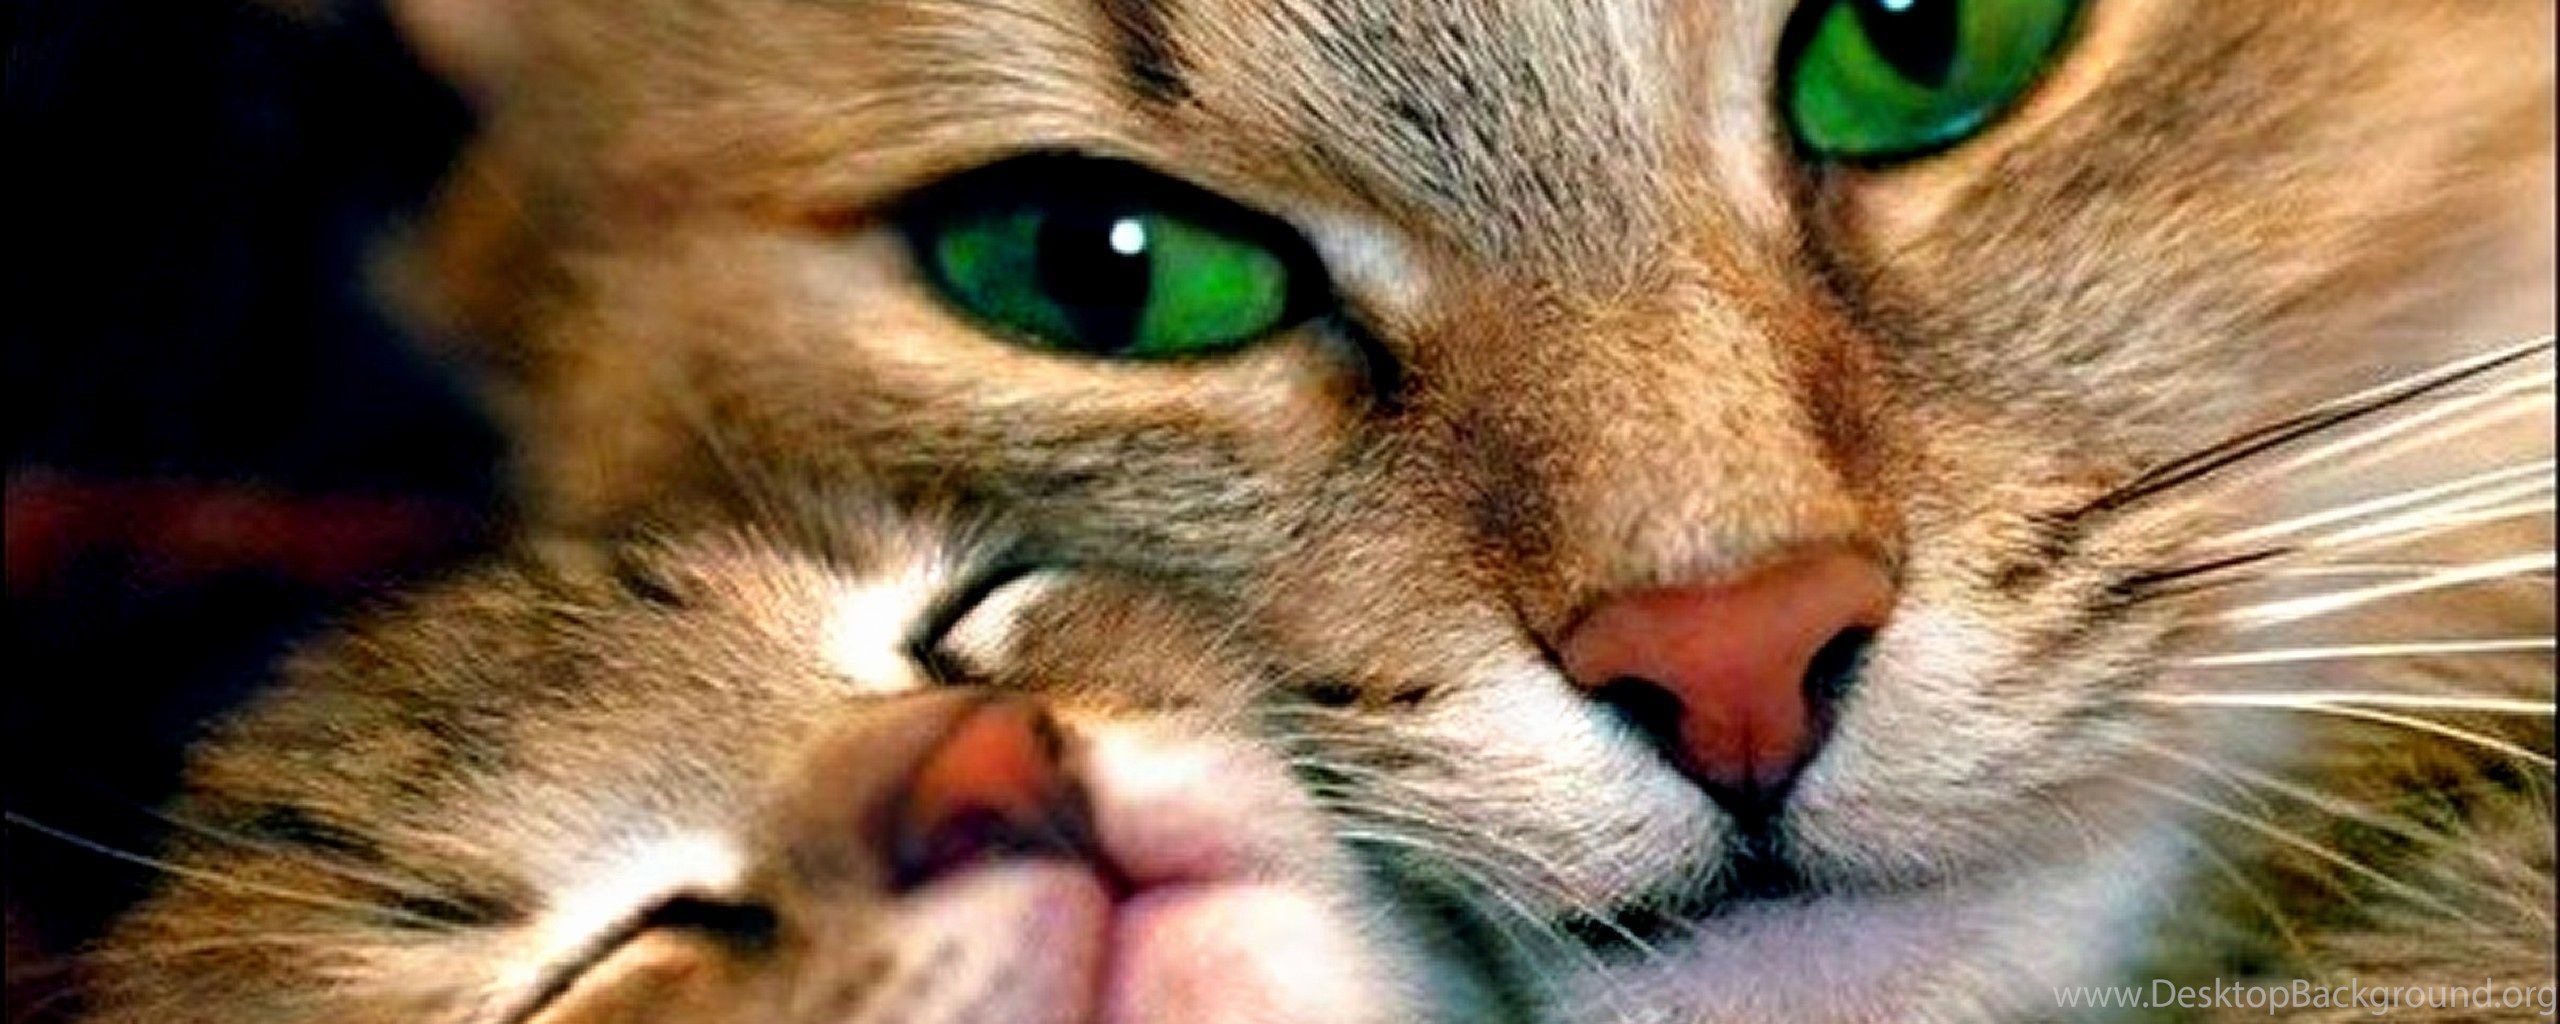 Песня малышка хочет ласки блестят красные глазки. Котики. Фото 1920 640 кошки. Cute Cat with Green Eyes. Котослов.